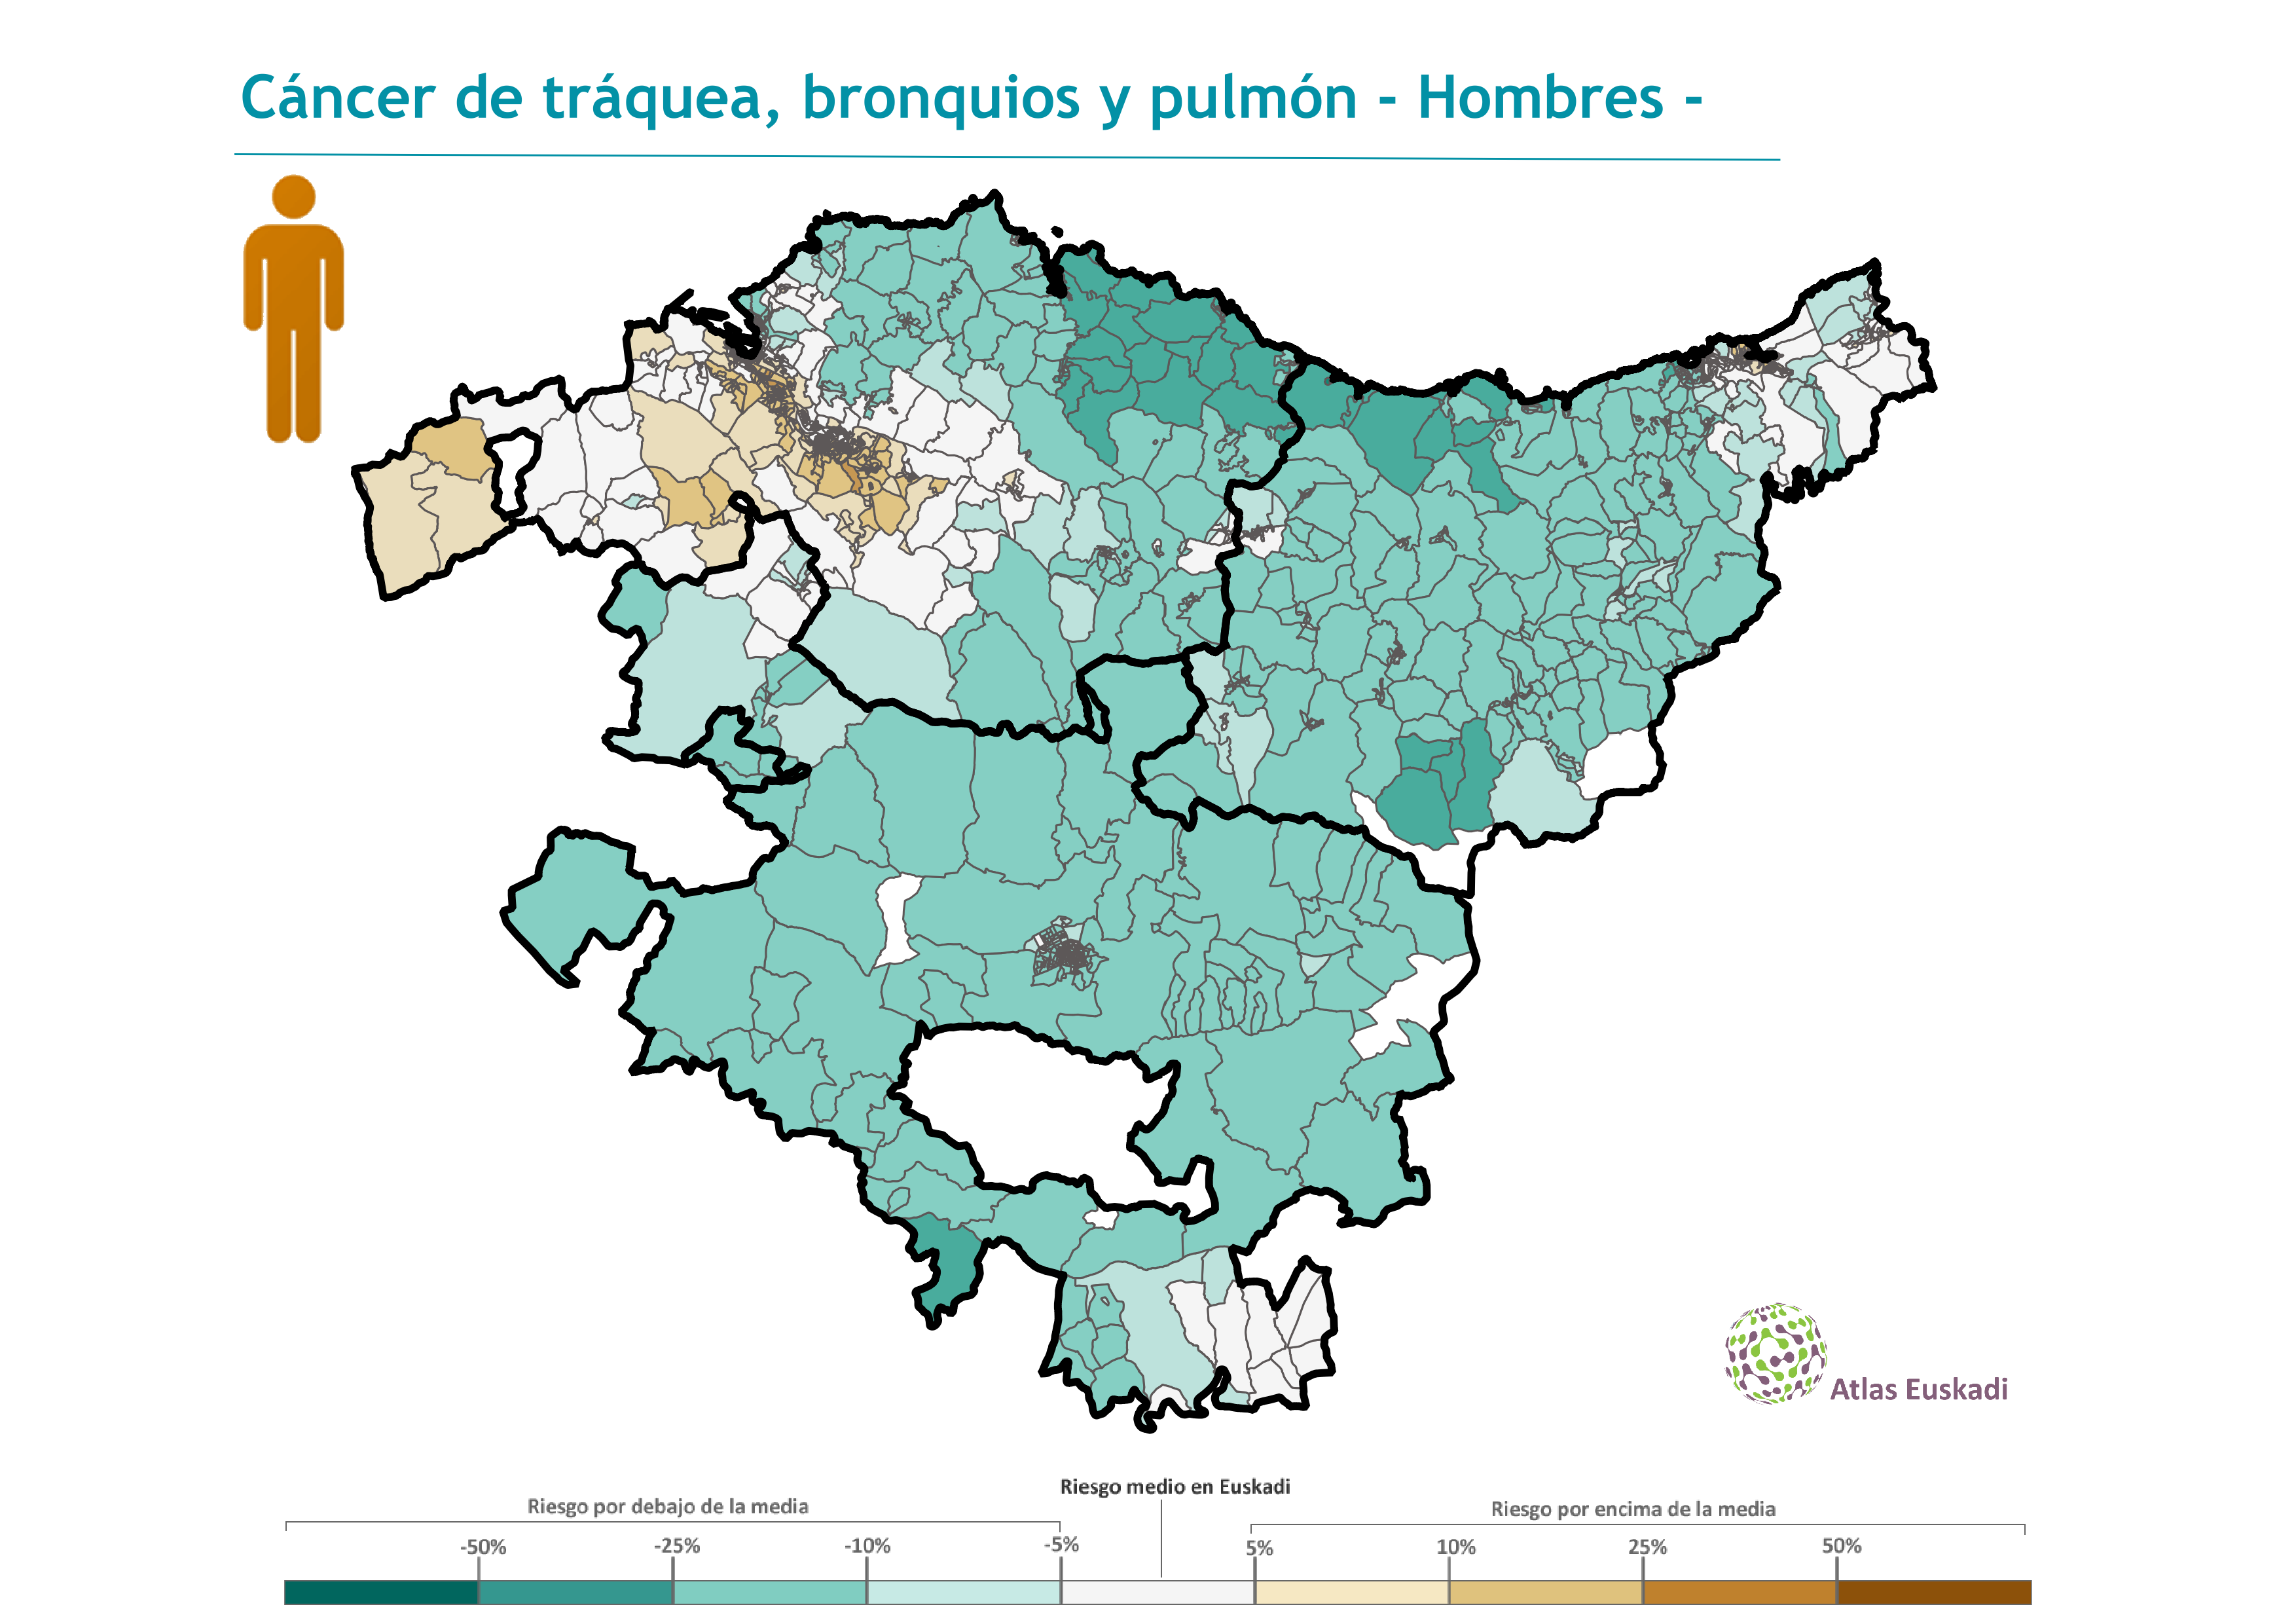 Cáncer de tráquea, bronquios y pulmón hombres  2008-2012 Euskadi